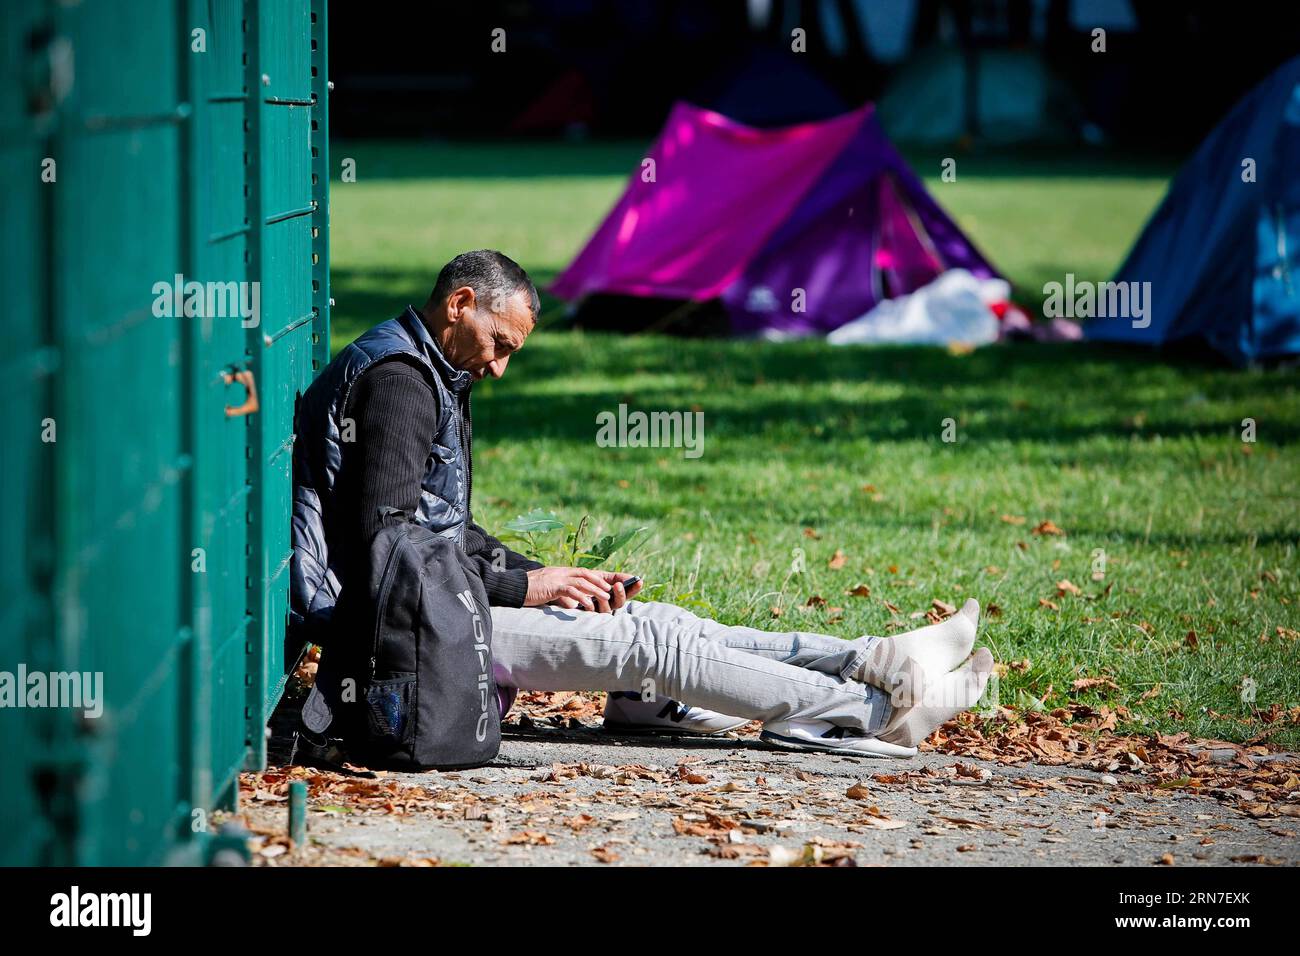 (150903) -- BRUXELLES, 3 septembre 2015 -- un demandeur d'asile irakien attend dans un camp de fortune à l'extérieur du centre d'accueil pour migrants à Bruxelles, Belgique, le 3 septembre 2015. Le nombre de réfugiés et de migrants traversant la Méditerranée cette année dépasse désormais les 300 000, selon le HCR, Agence des Nations Unies pour les réfugiés. Zhou Lei) BELGIQUE-EUROPE-MIGRANTS-DEMANDEURS D'ASILE ?? PUBLICATIONxNOTxINxCHN 150903 Bruxelles sept 3 2015 à un demandeur d'asile d'Irak attend DANS un camp de fortune à l'extérieur du Centre d'accueil des immigrants à Bruxelles Belgique LE 3 2015 septembre le nombre de réfugiés et de migrants traversant la Mediterra Banque D'Images